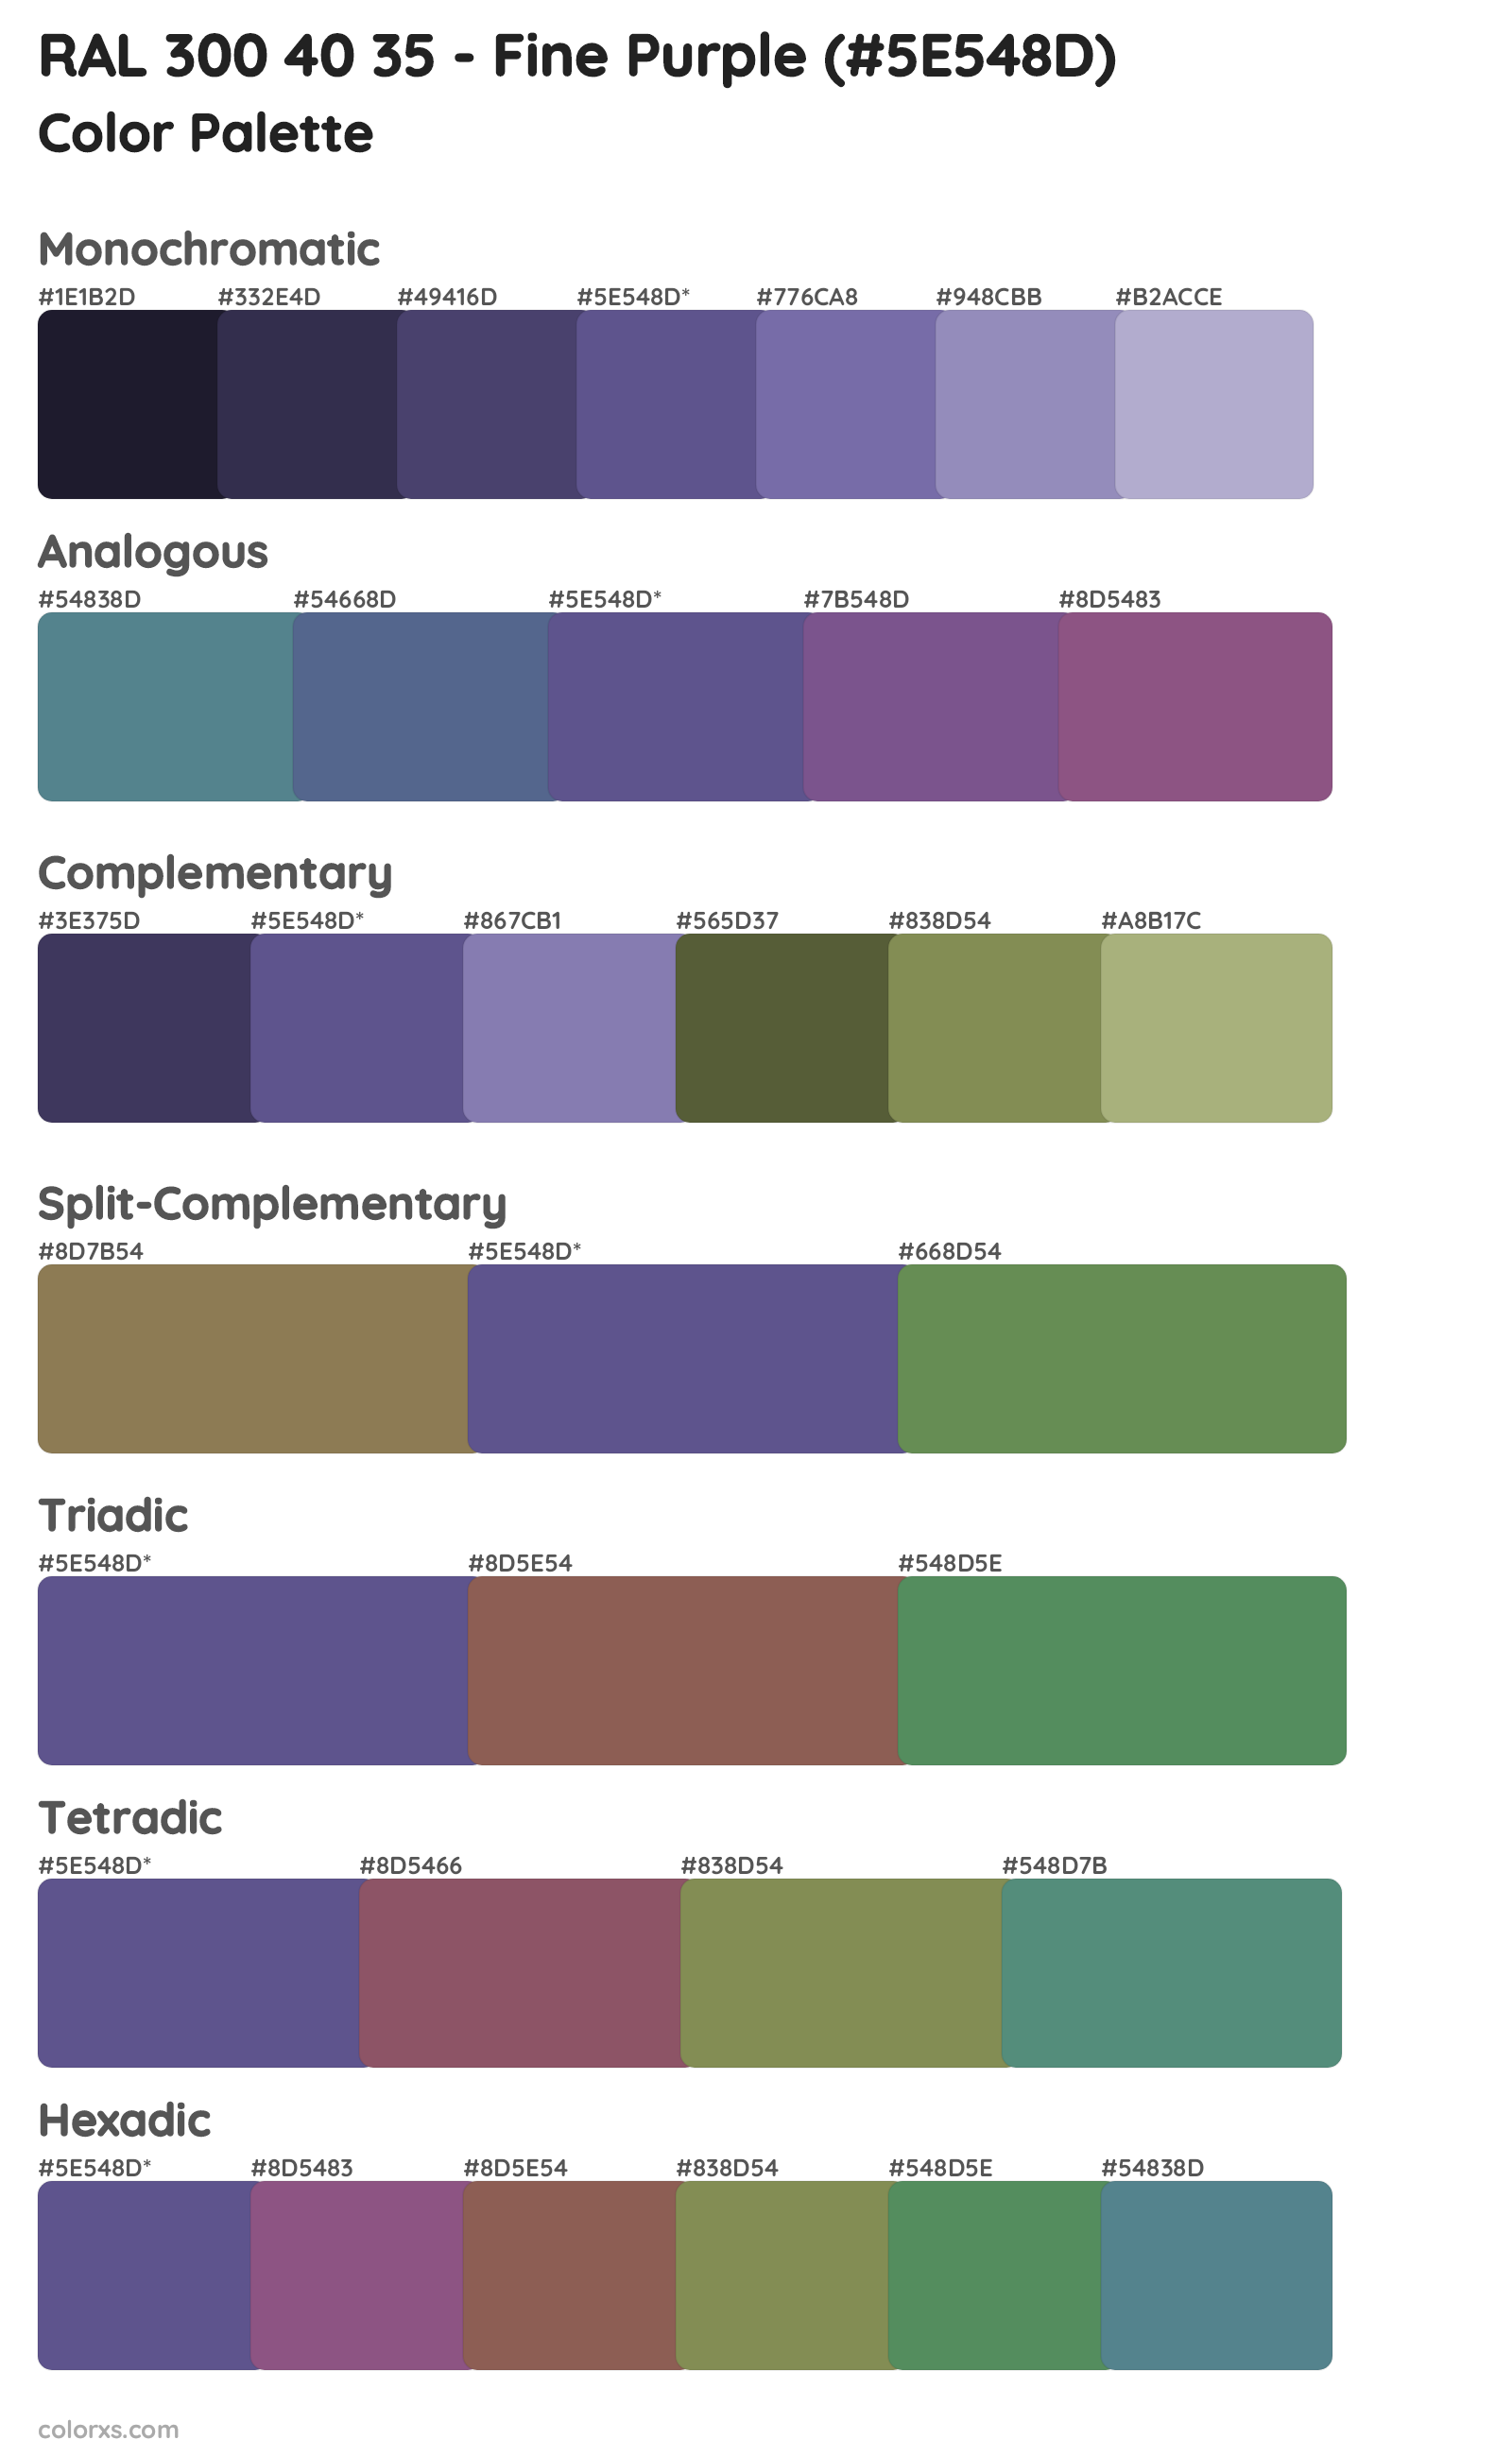 RAL 300 40 35 - Fine Purple Color Scheme Palettes